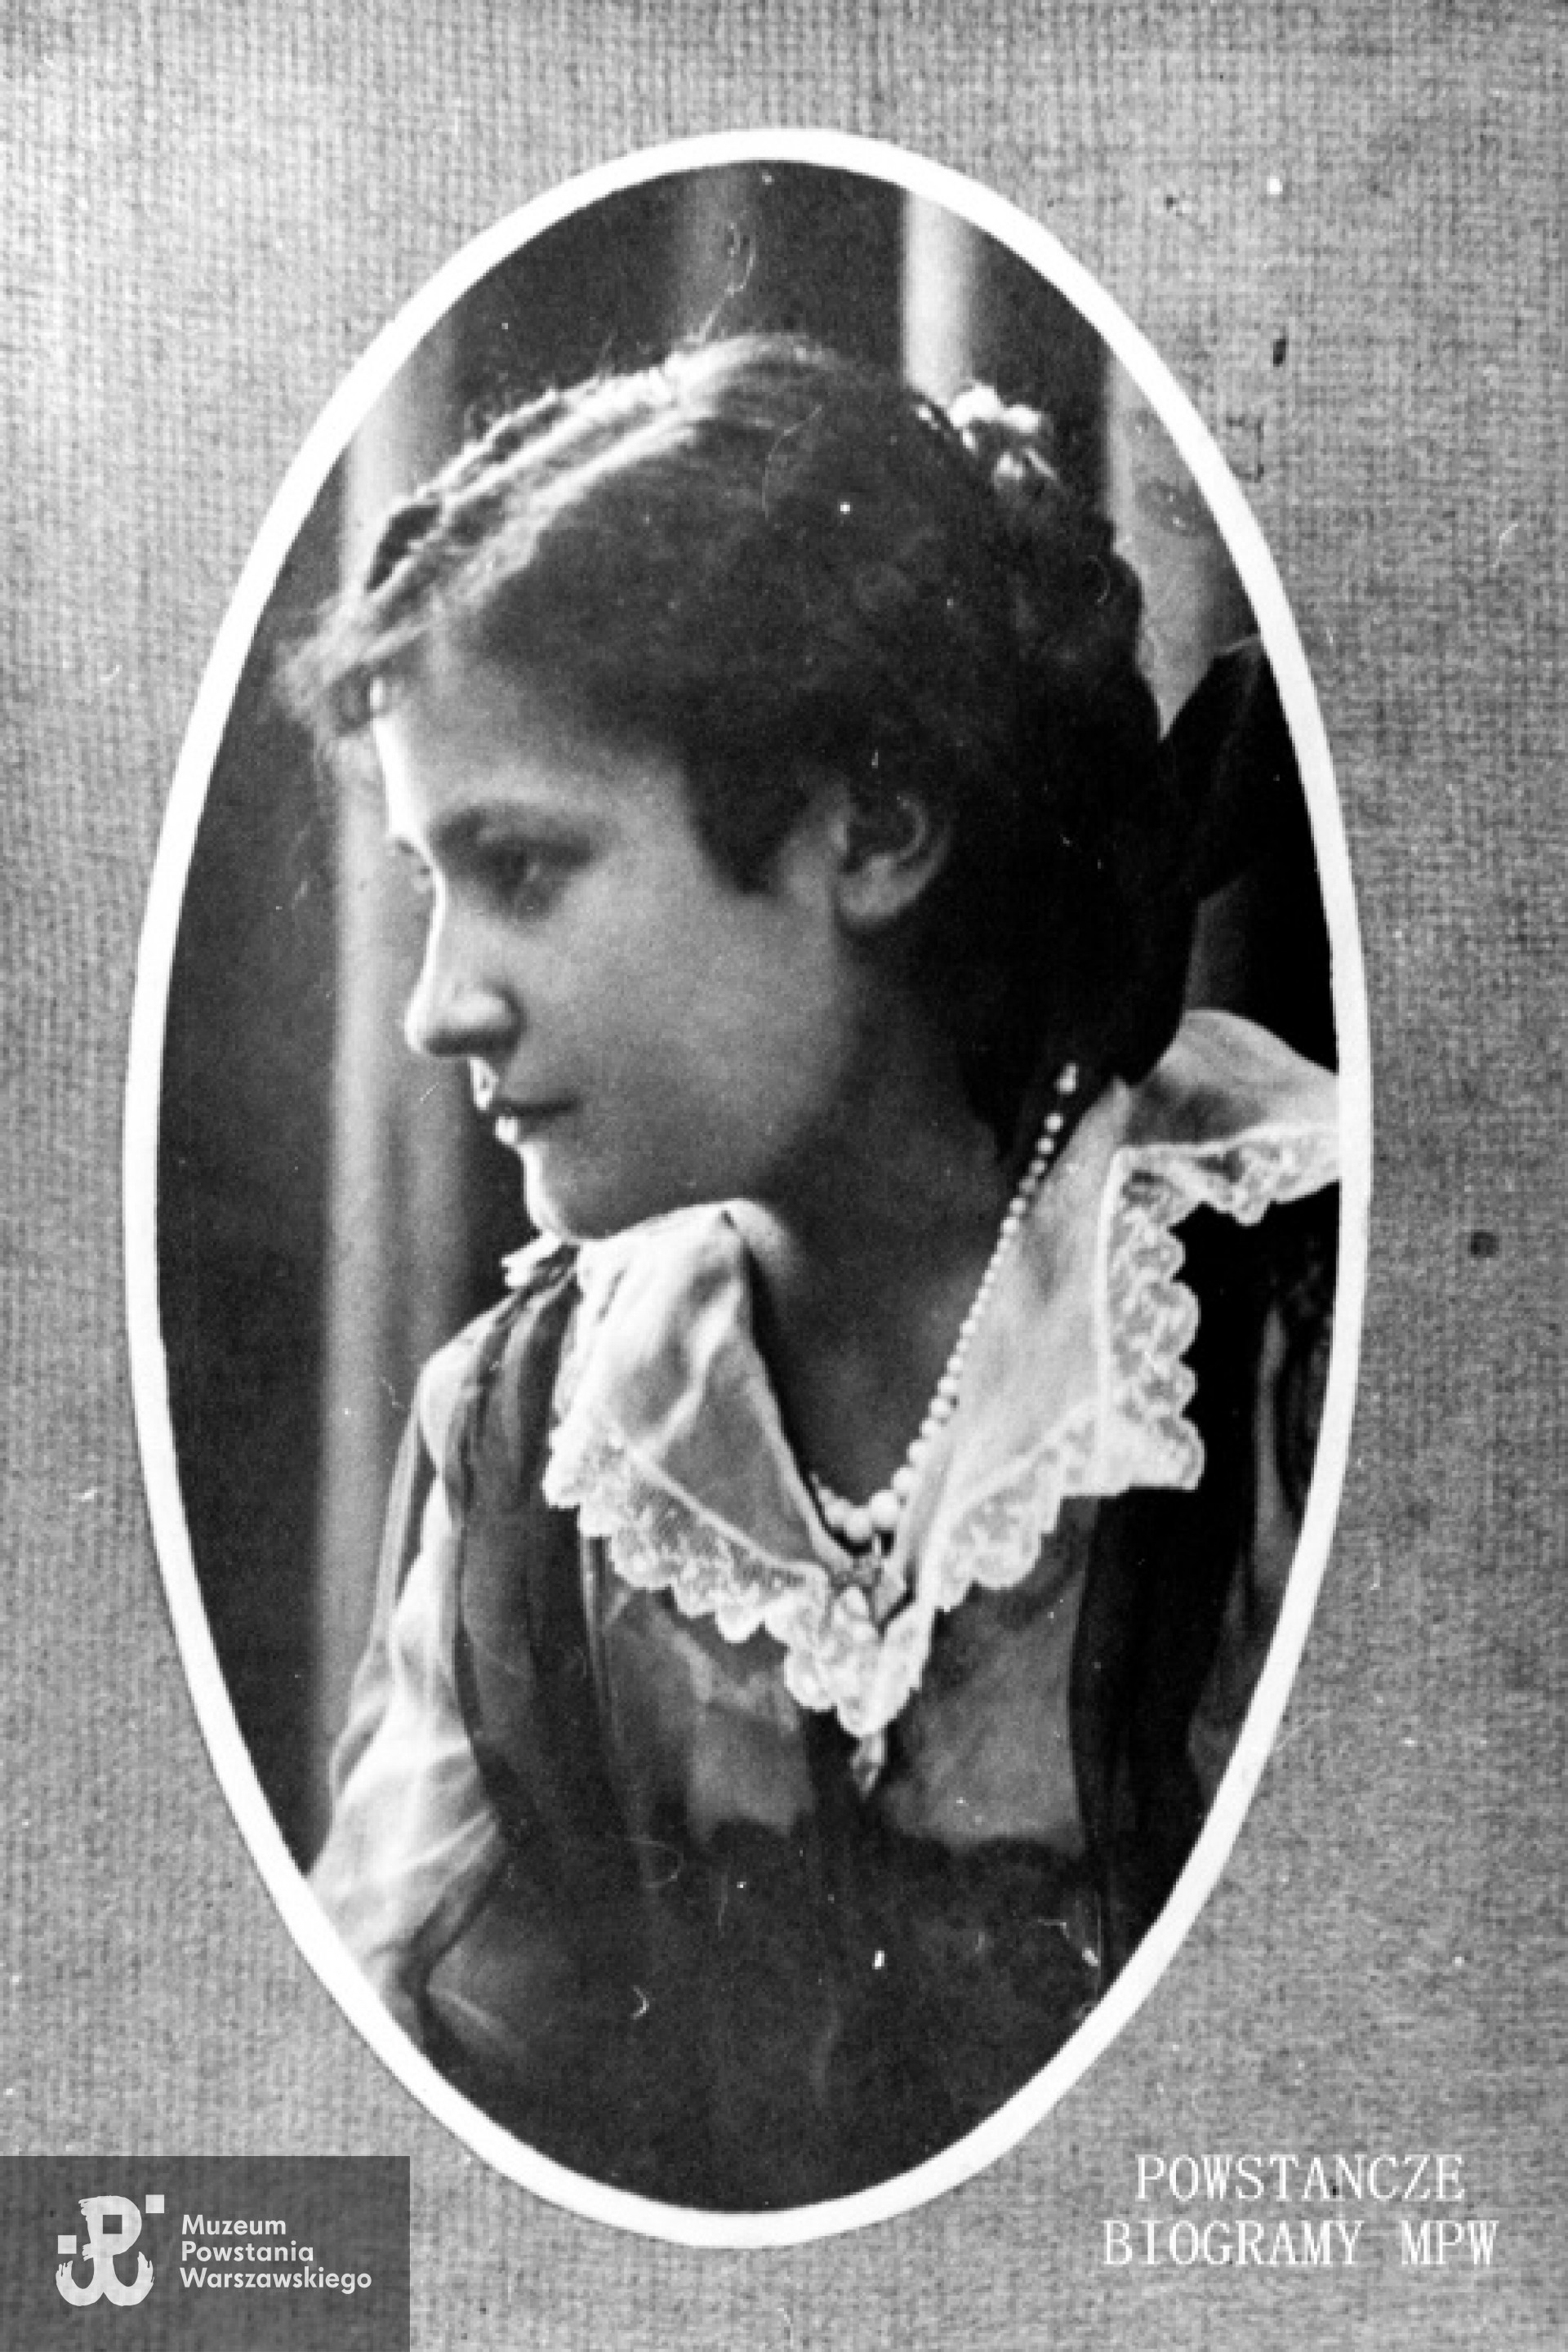 Balbina Przeździecka "Prus" (1893-1944), na zdjęciu we wczesnej młodości. Fot. z archiwum rodzinnego.